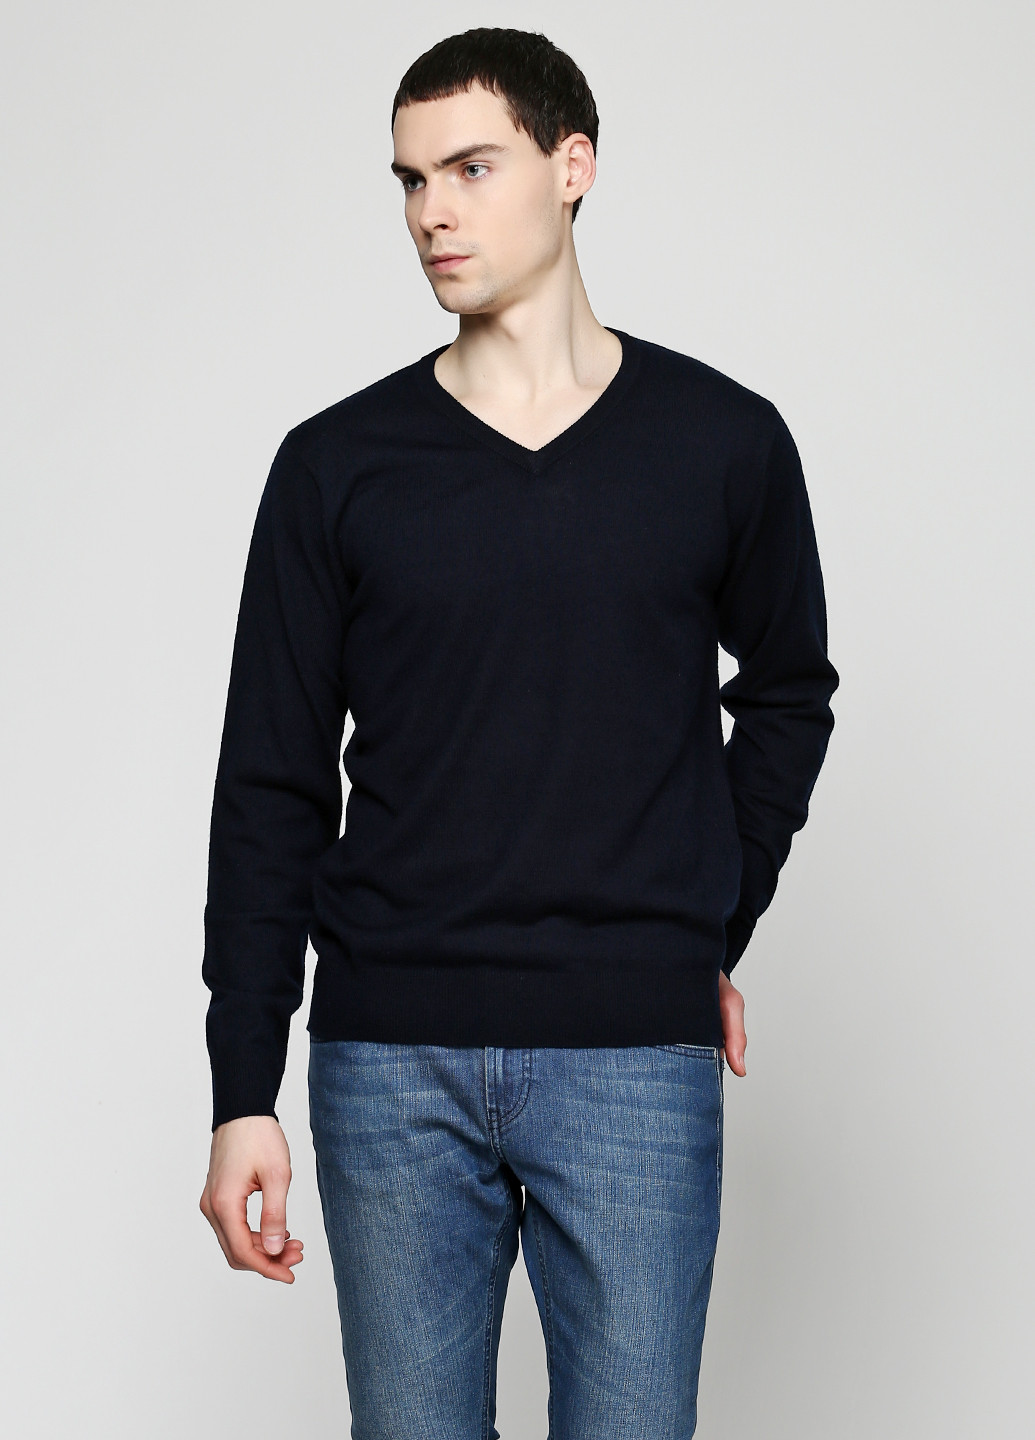 Чорний демісезонний пуловер пуловер Pierre Balmain